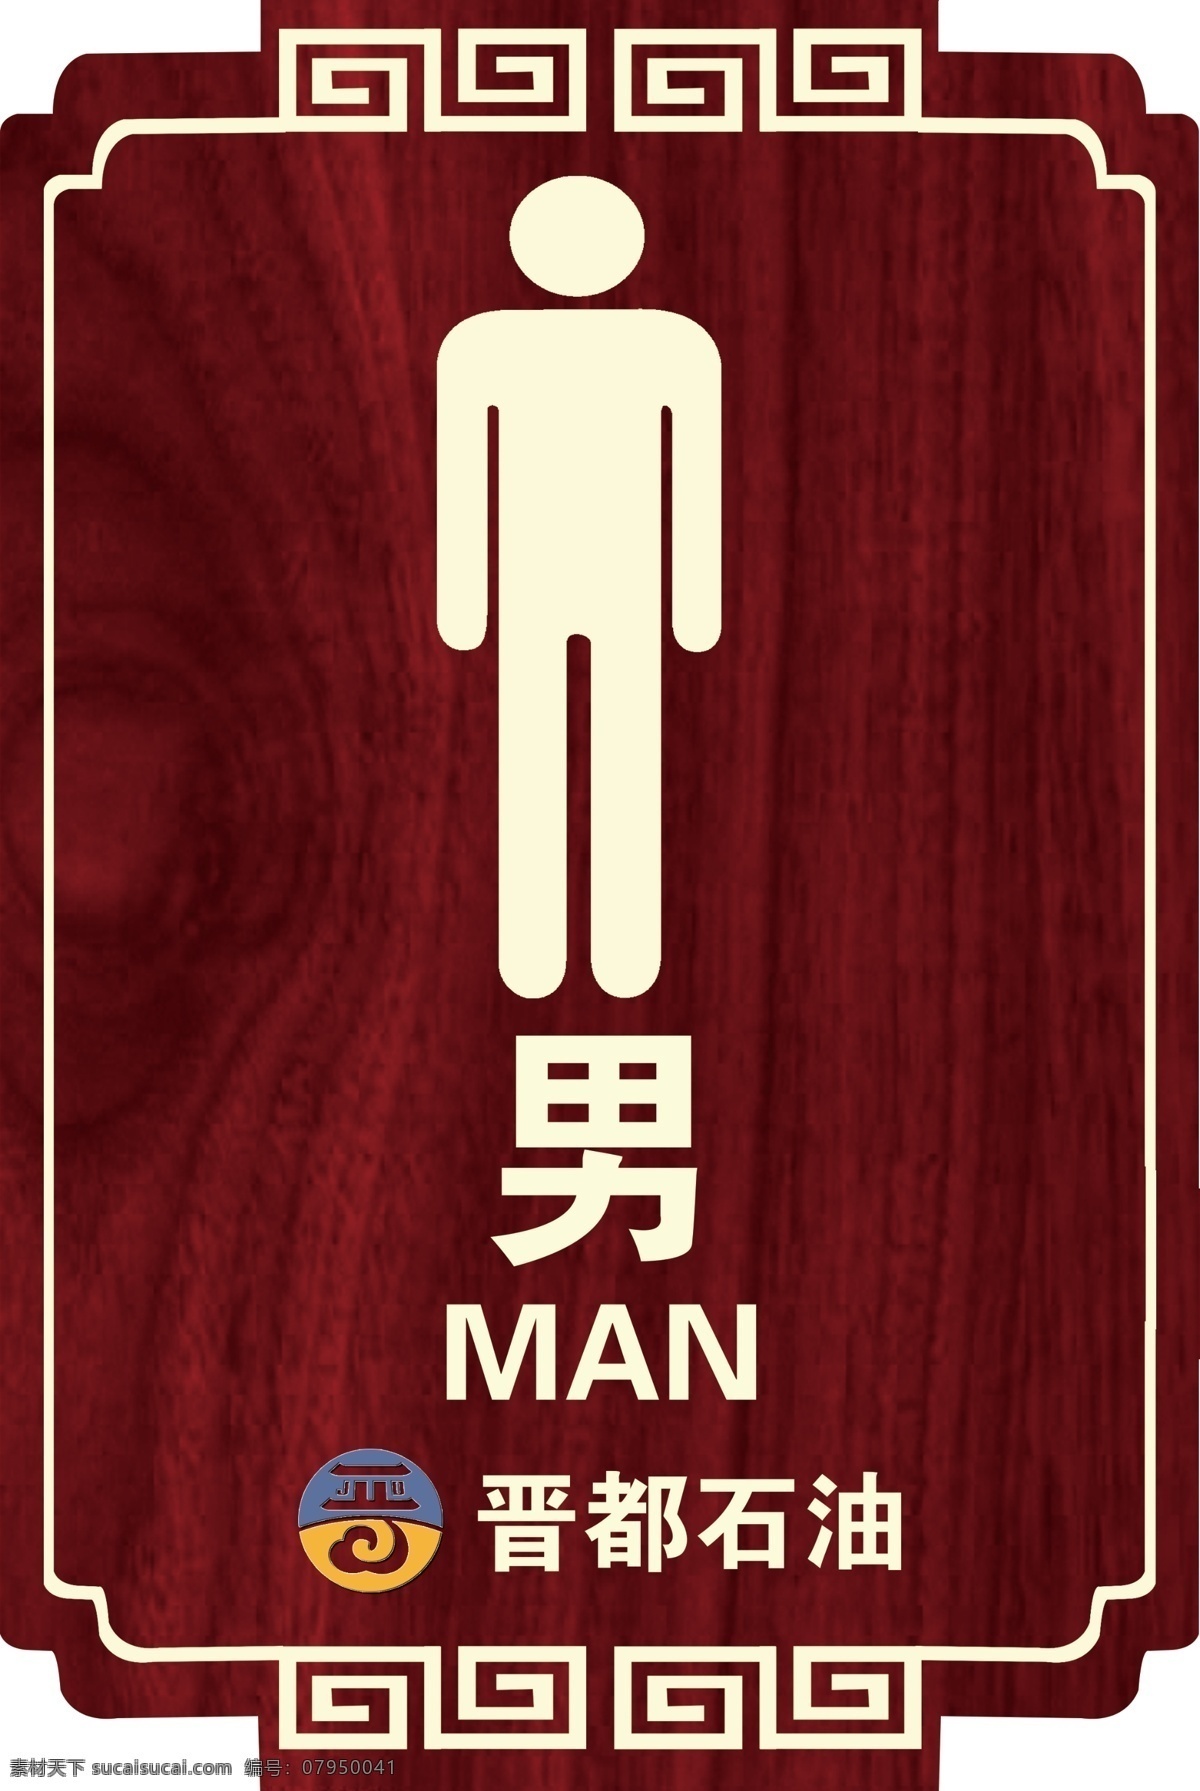 男 厕所牌图片 厕所牌 卫生间 牌 厕所挂牌